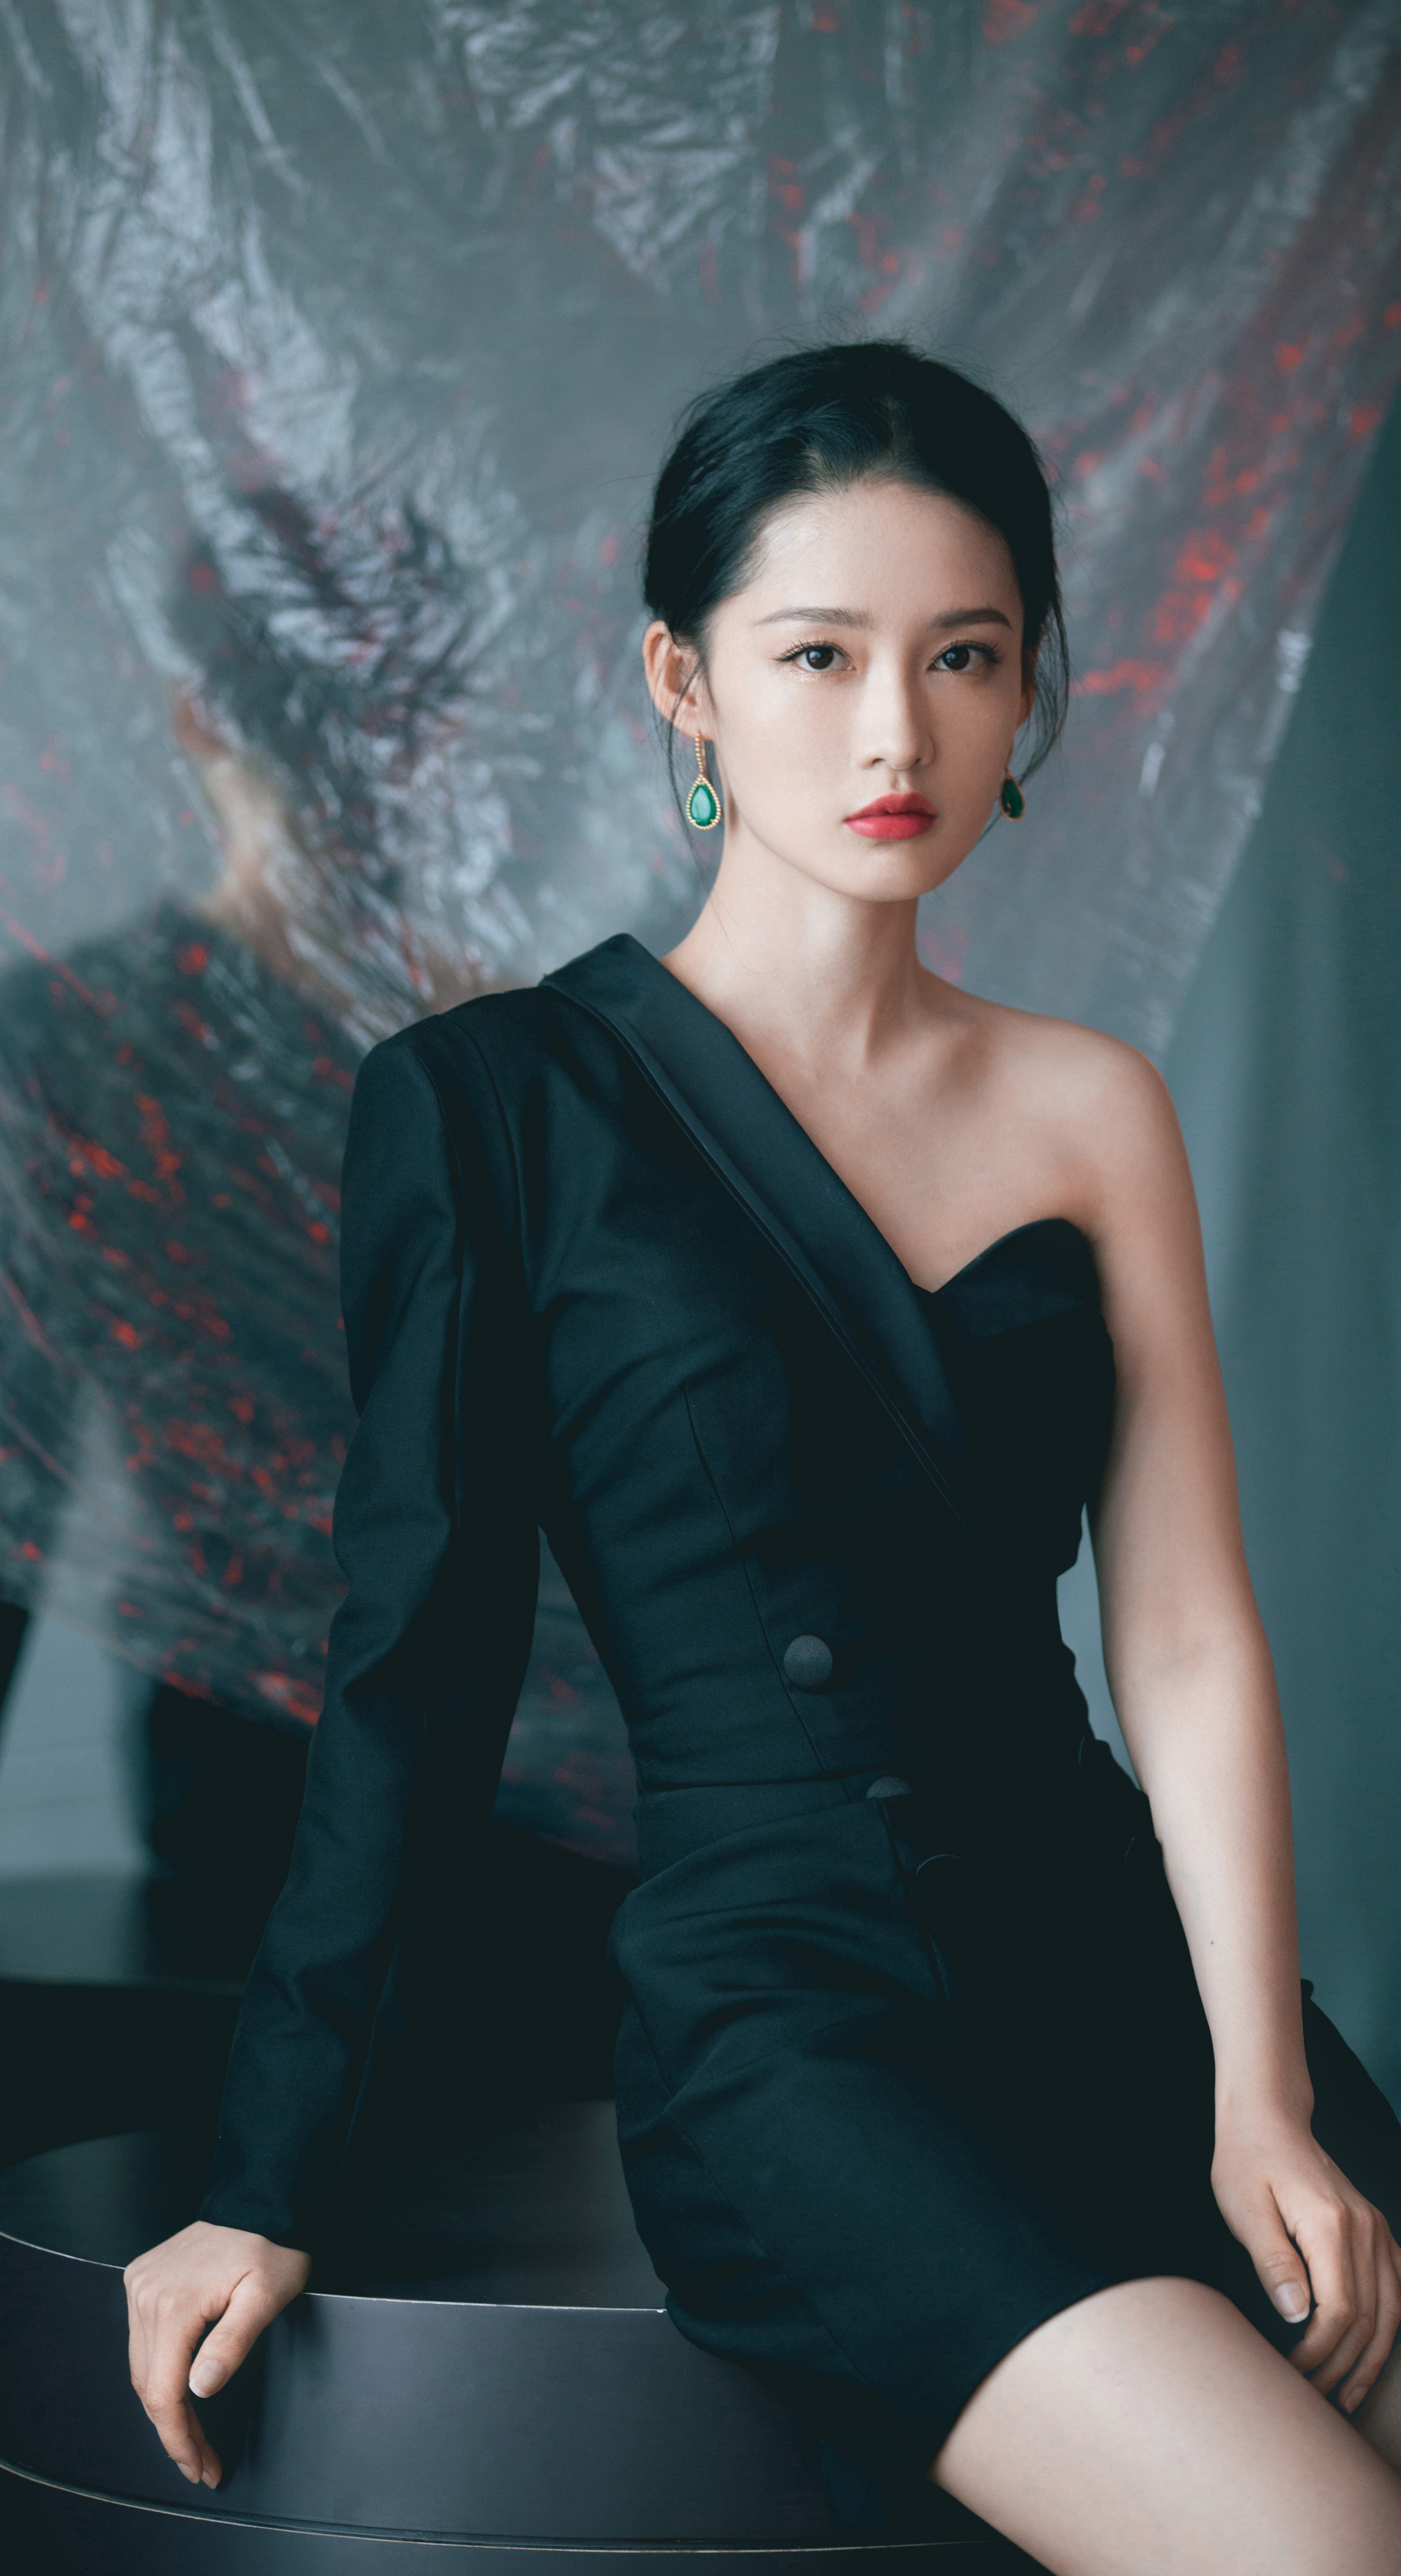 中國十大美女排行榜 娛樂圈最美十大女明星-圖8